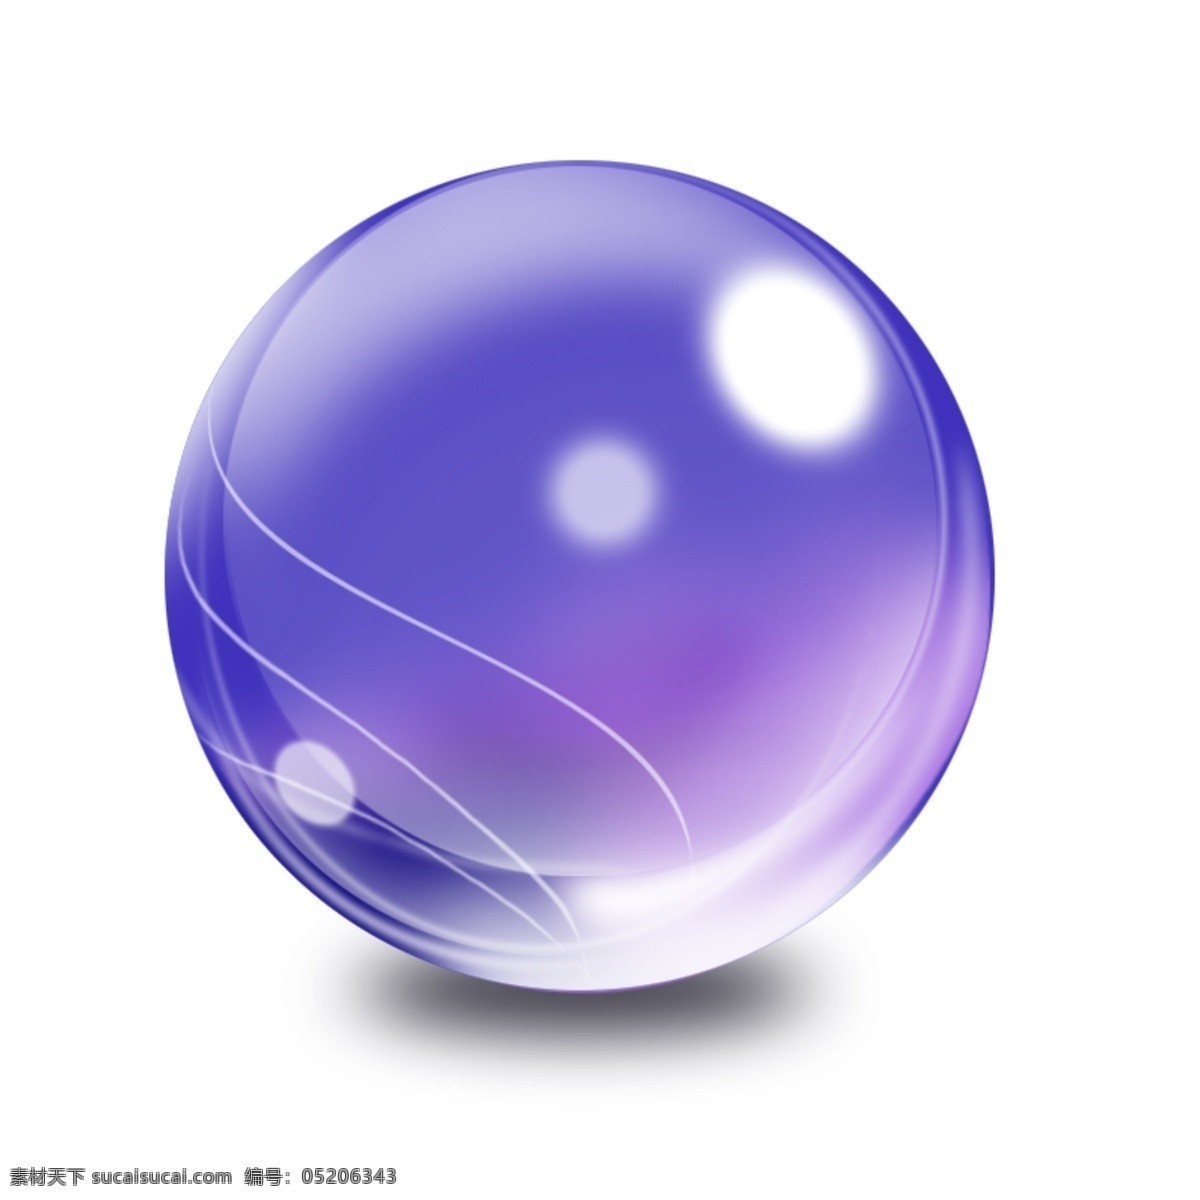 紫色水晶球 圆 圆球球体 水晶球 线条 发光 数字 科技 透明光泽 广告设计模板 源文件